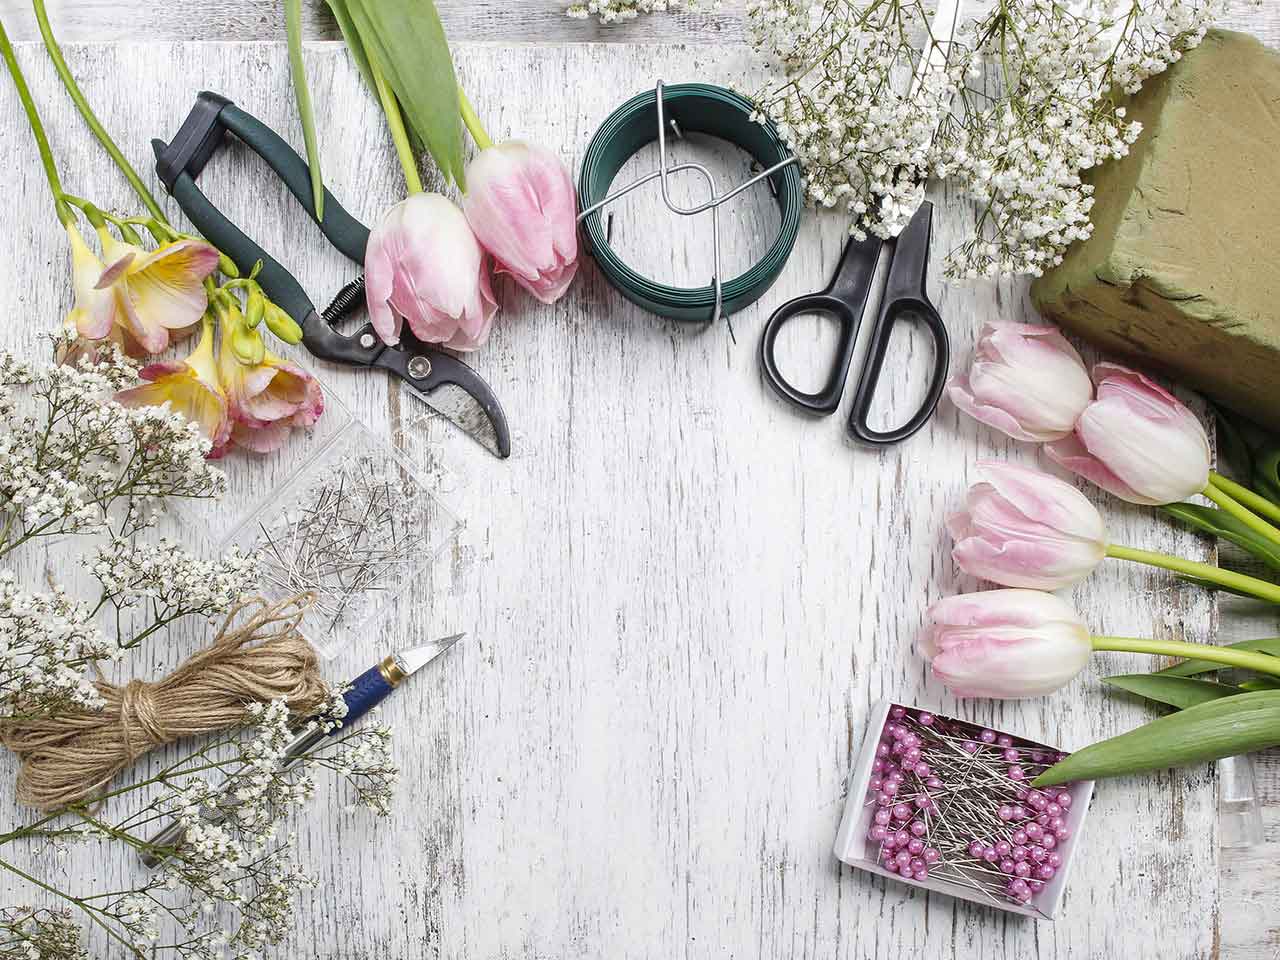 Florist tools